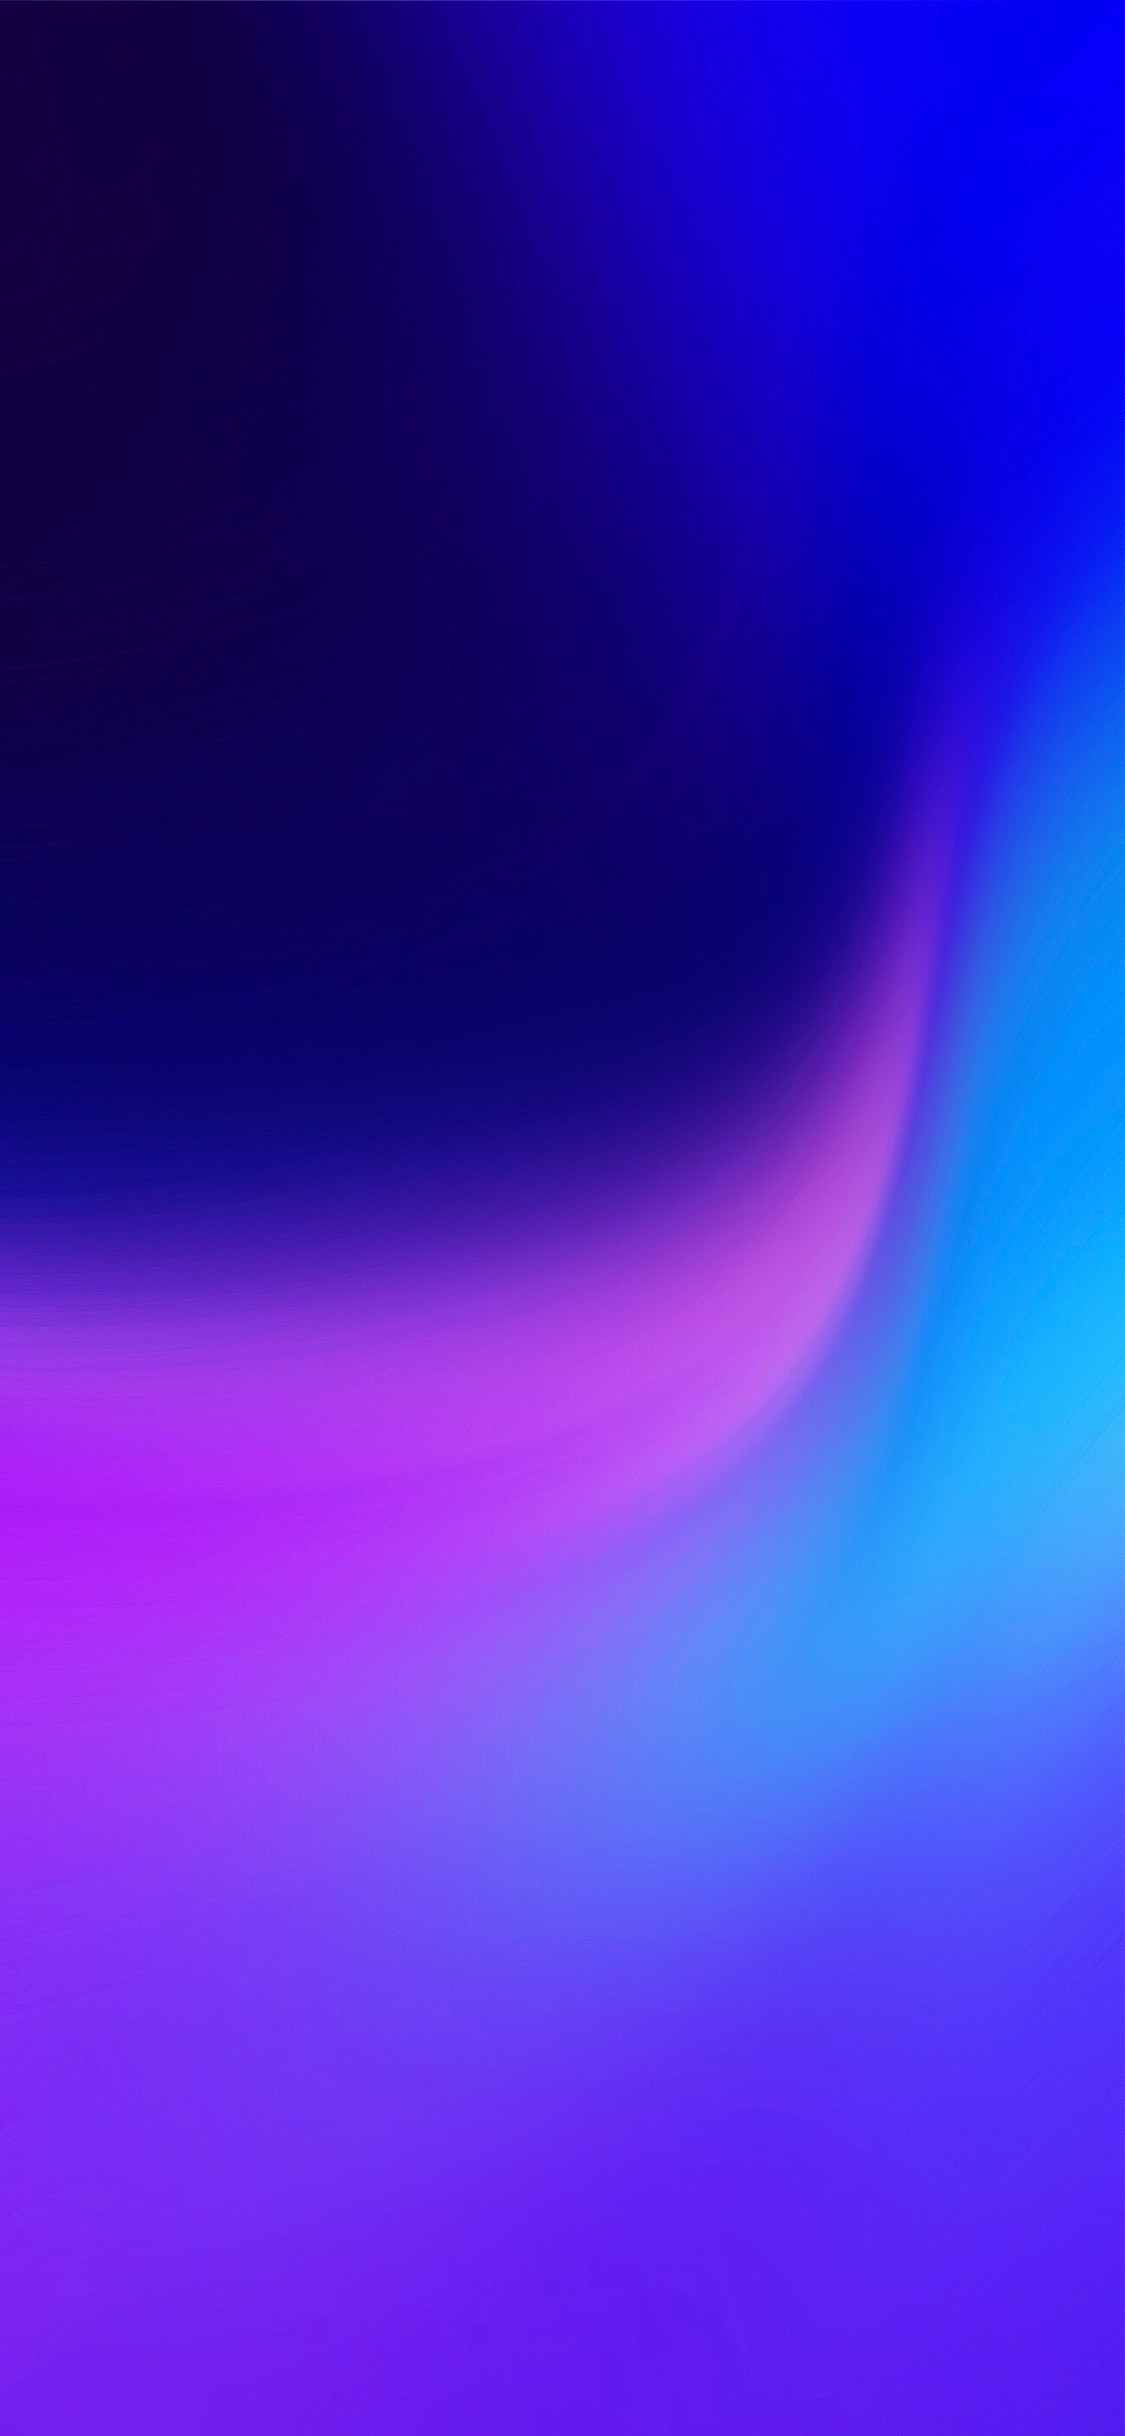 sfondo della schermata iniziale,blu,viola,viola,blu elettrico,leggero